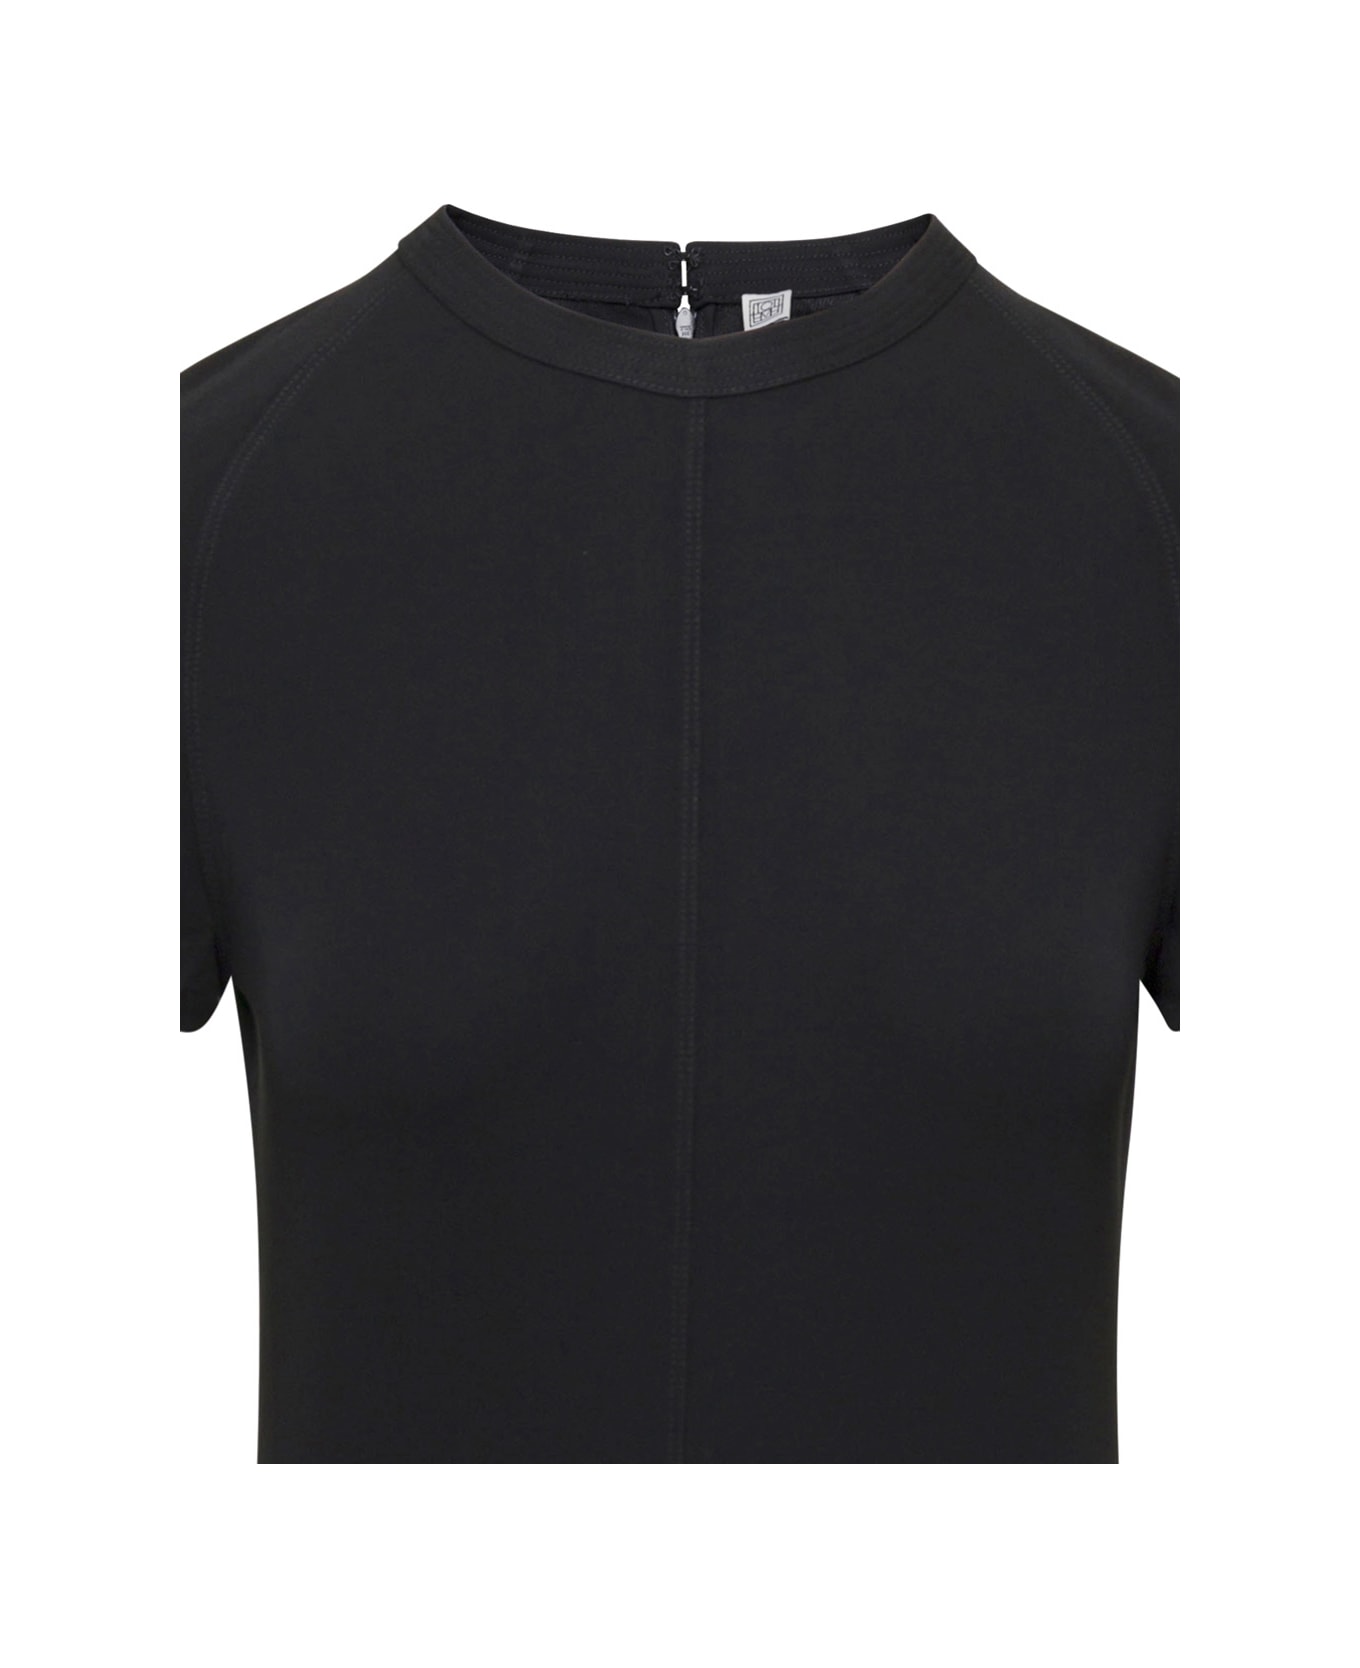 Totême Black Crewneck Fluid Maxi Dress In Viscose Woman - Black ワンピース＆ドレス